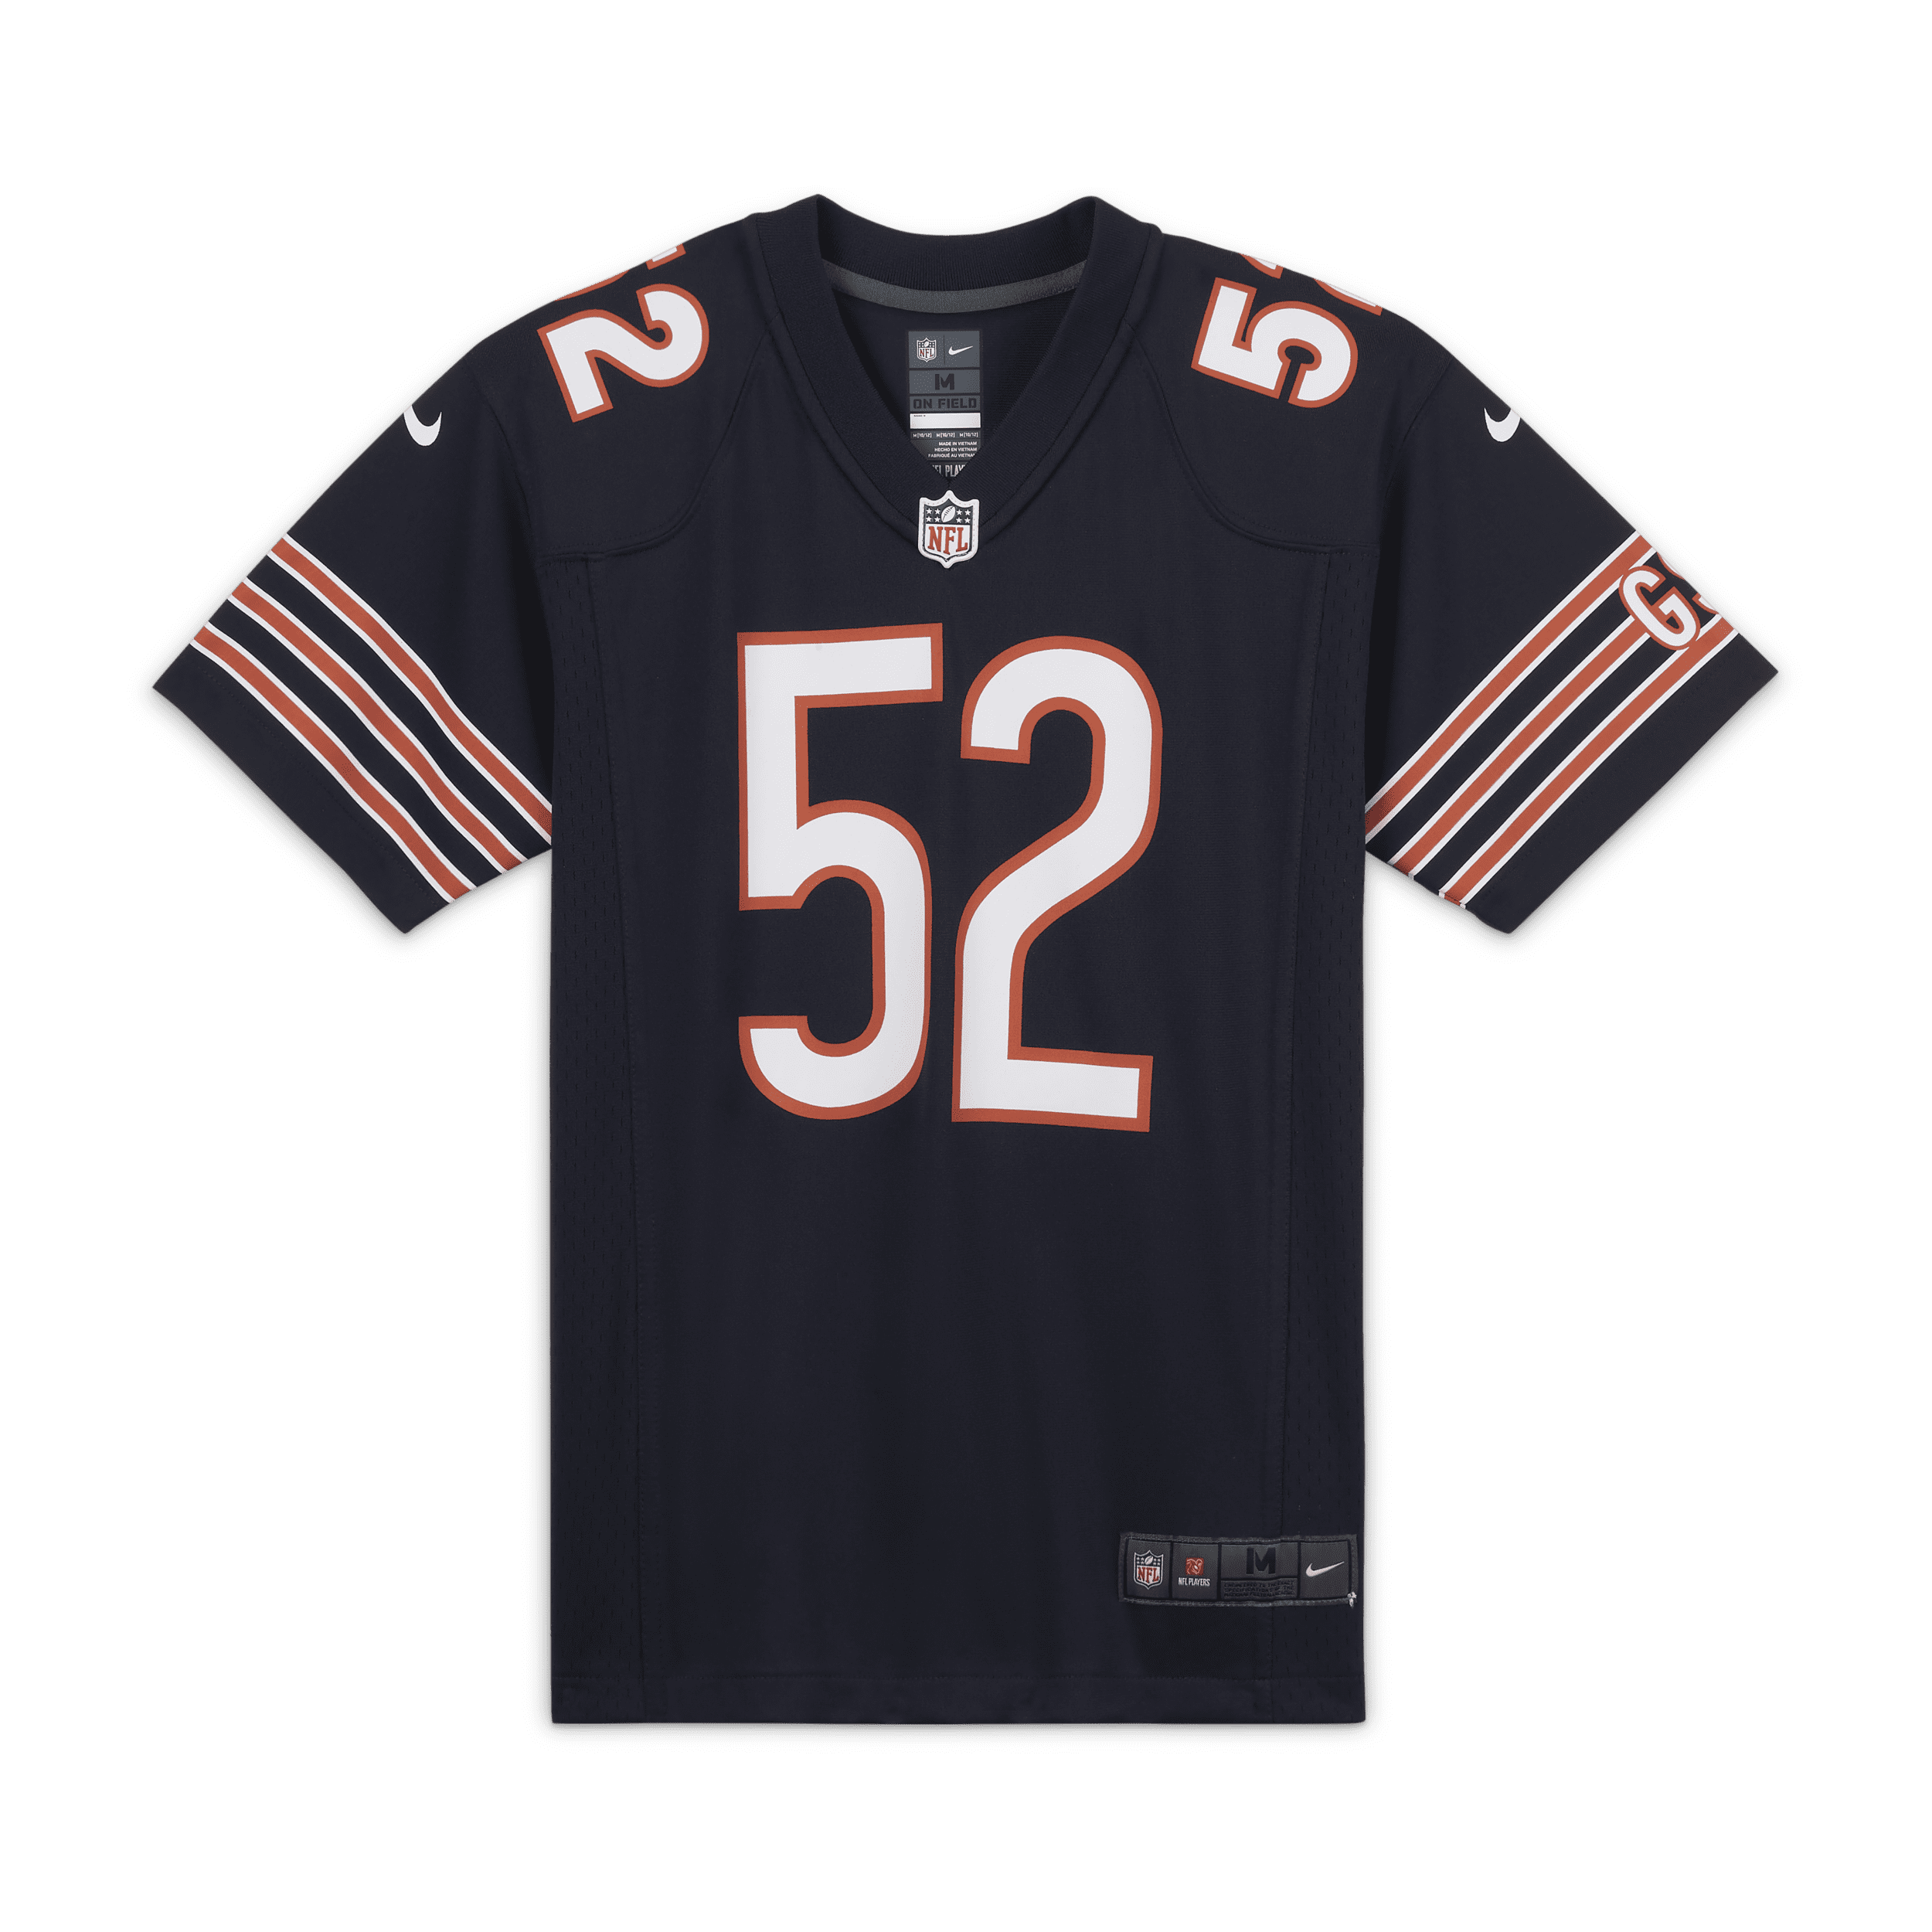 Φανέλα αμερικανικού ποδοσφαίρου NFL Chicago Bears (Khalil Mack) για μεγάλα παιδιά - Μπλε